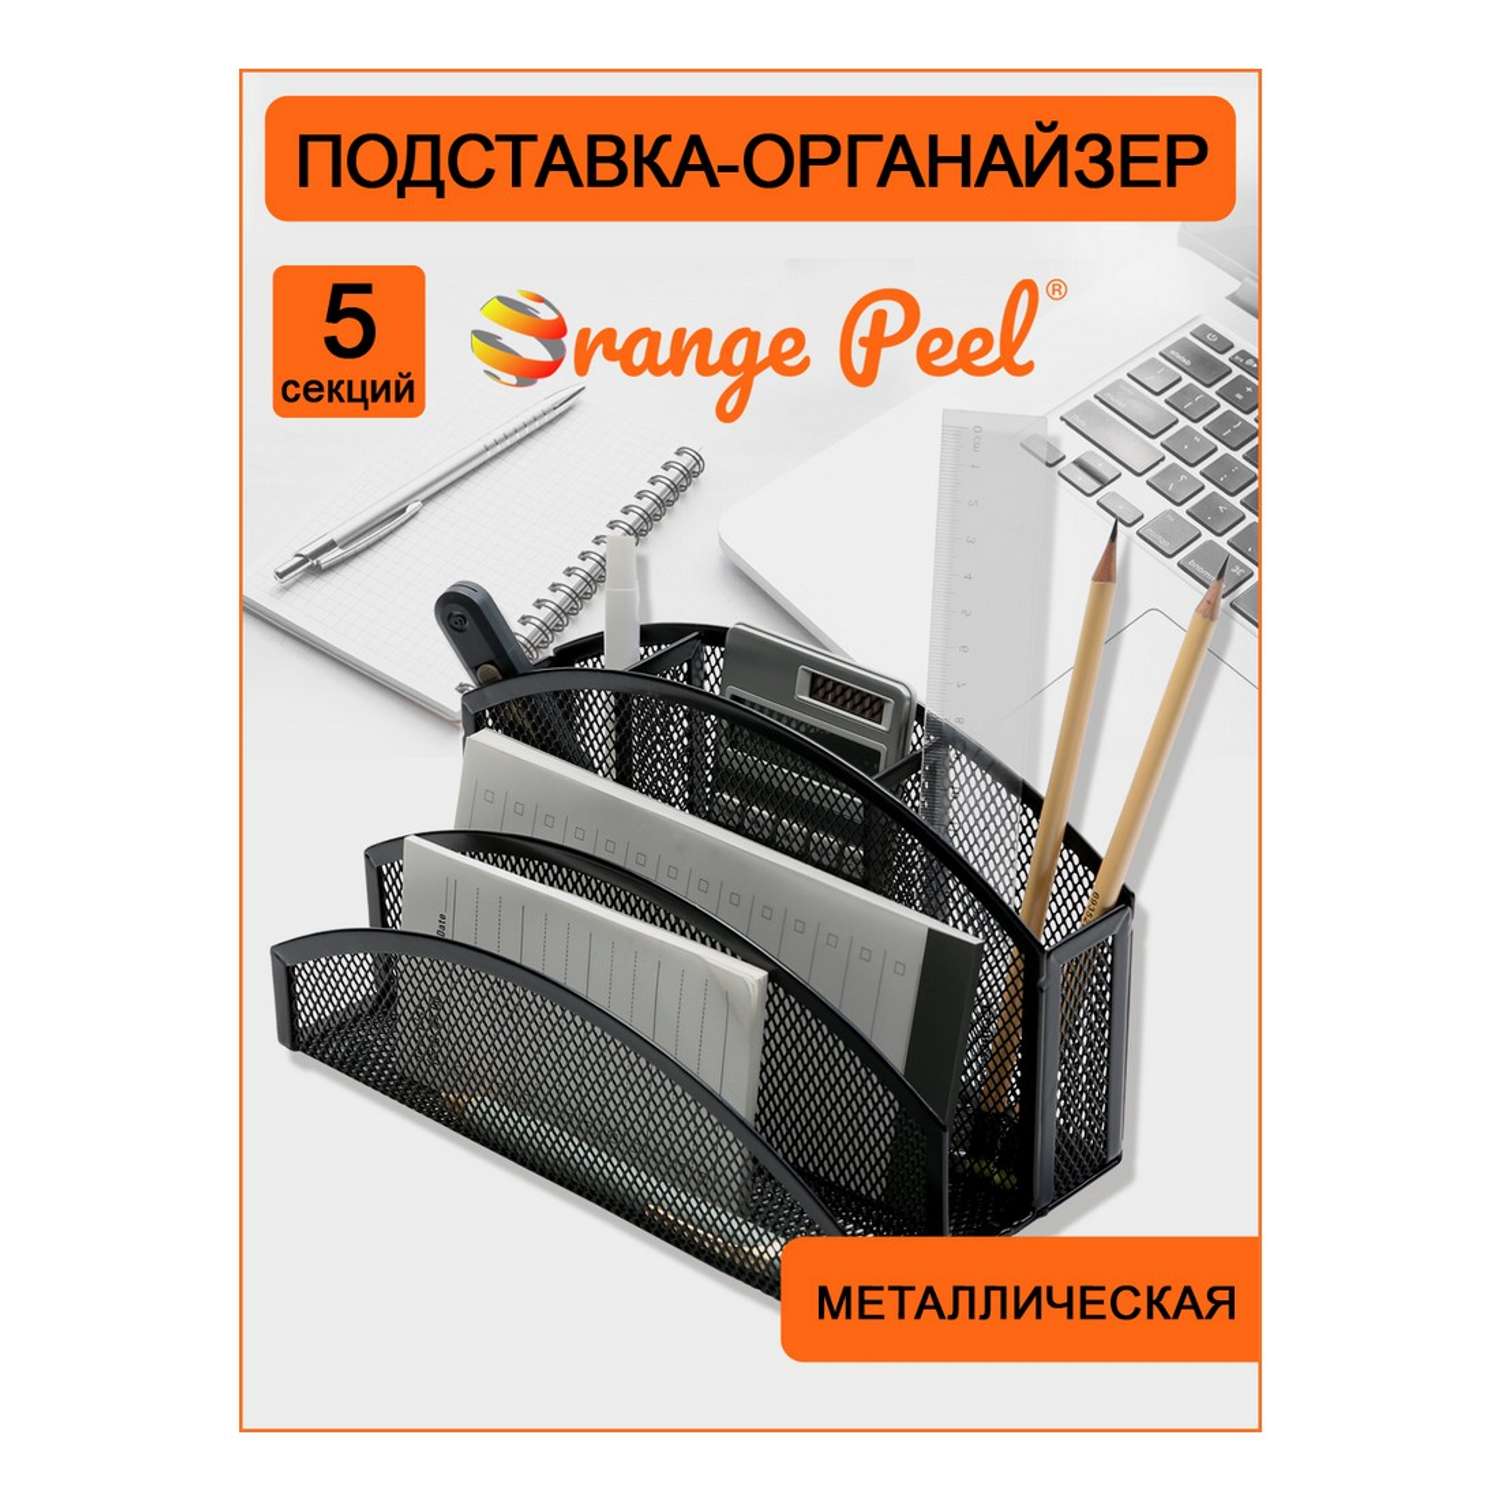 Подставка-органайзер Orange Peel для канцелярии металлическая черная. 5 секций - фото 2